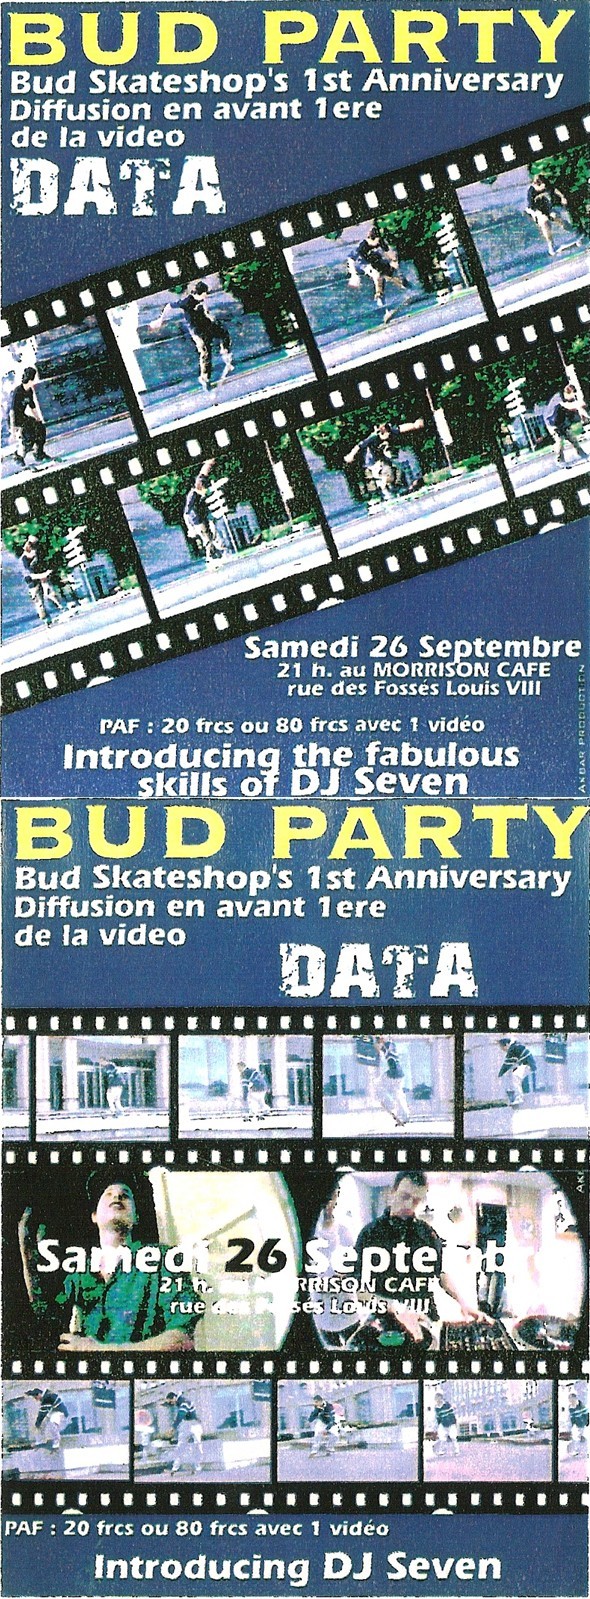 bud party data avant-premiere video rouen morrison 26 septembre 1998